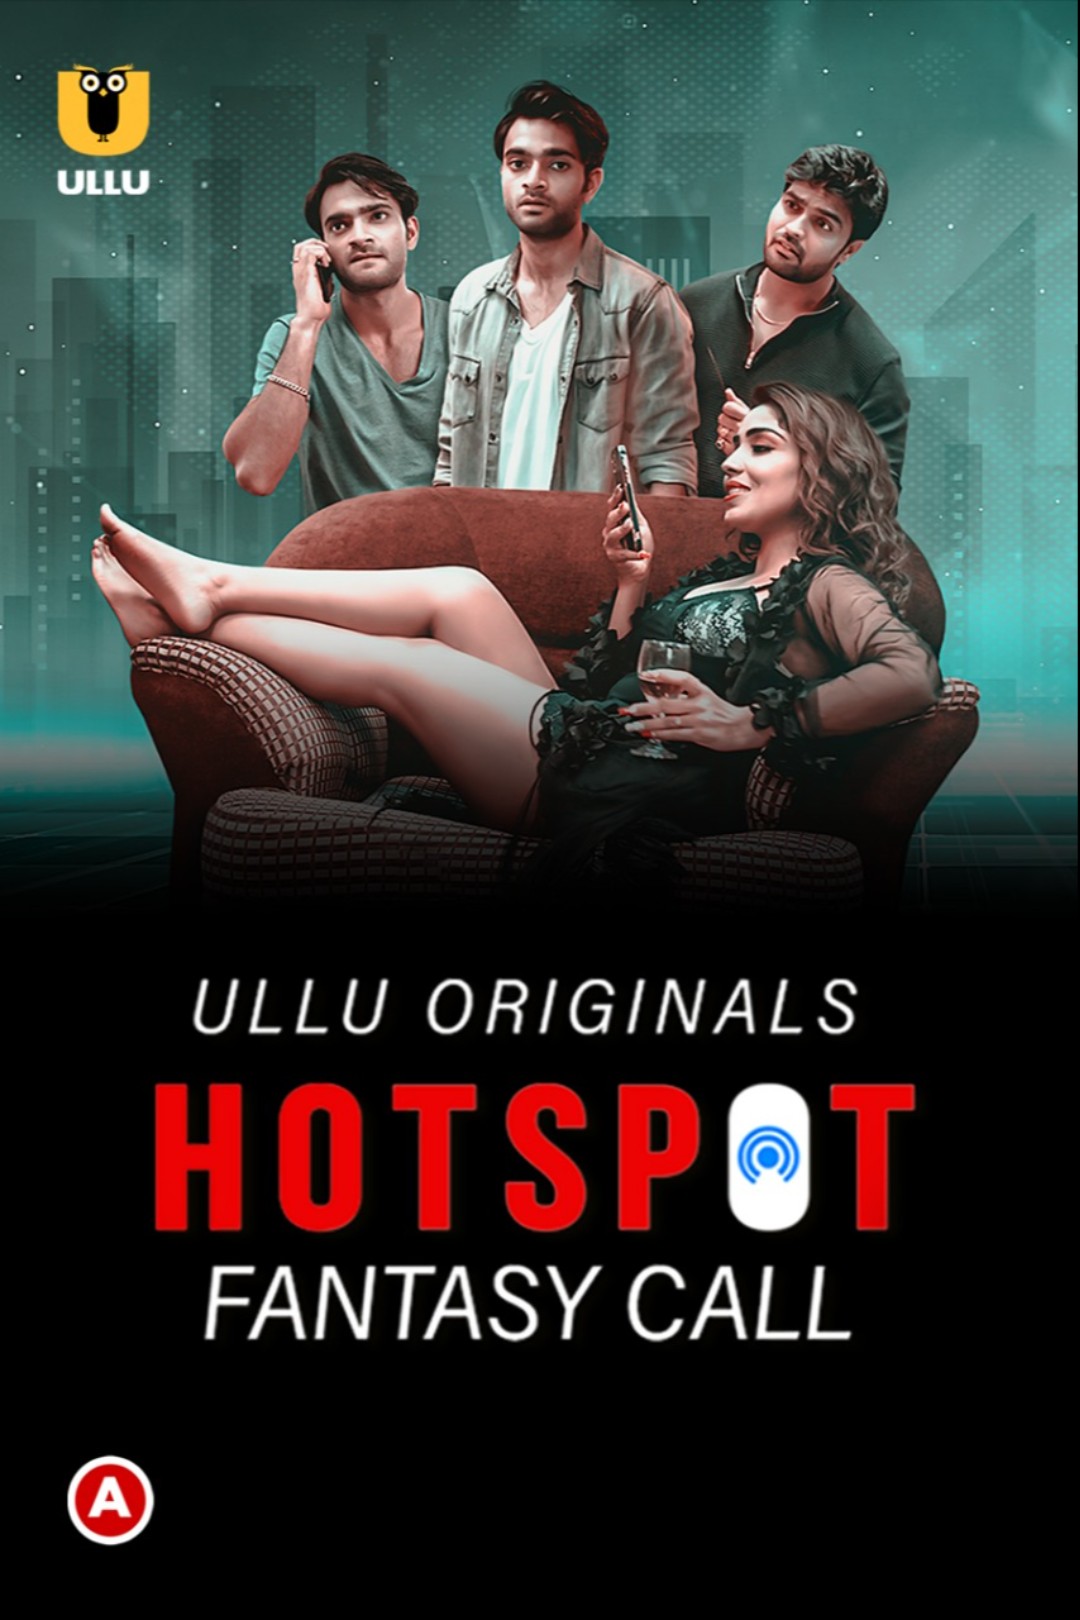 Hotspot (Fantasy Call) 2021 Hindi Ullu